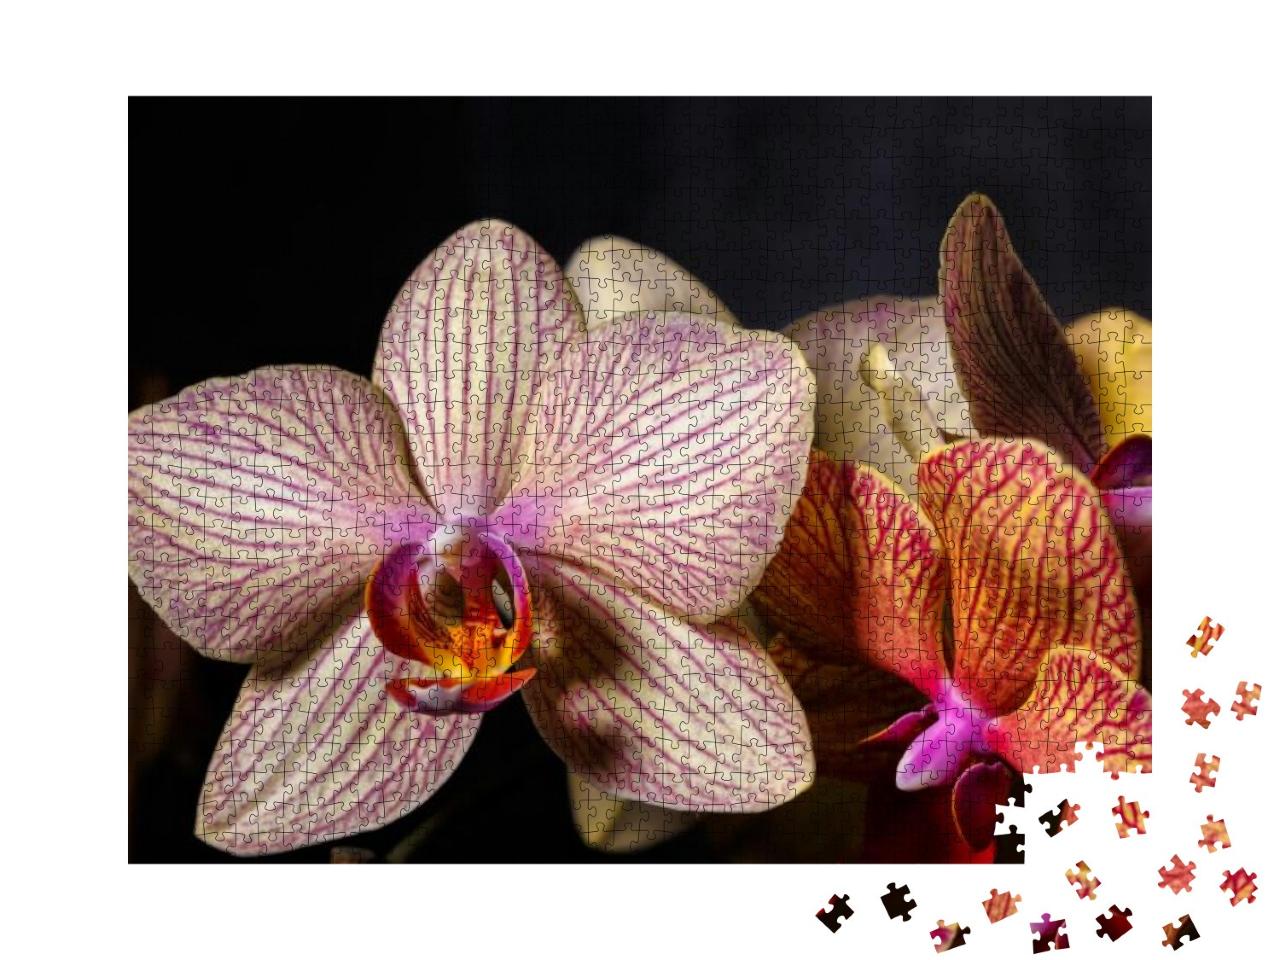 Puzzle 1000 Teile „Wunderschöne gelb-rosa Orchideenblüte in Nahaufnahme“